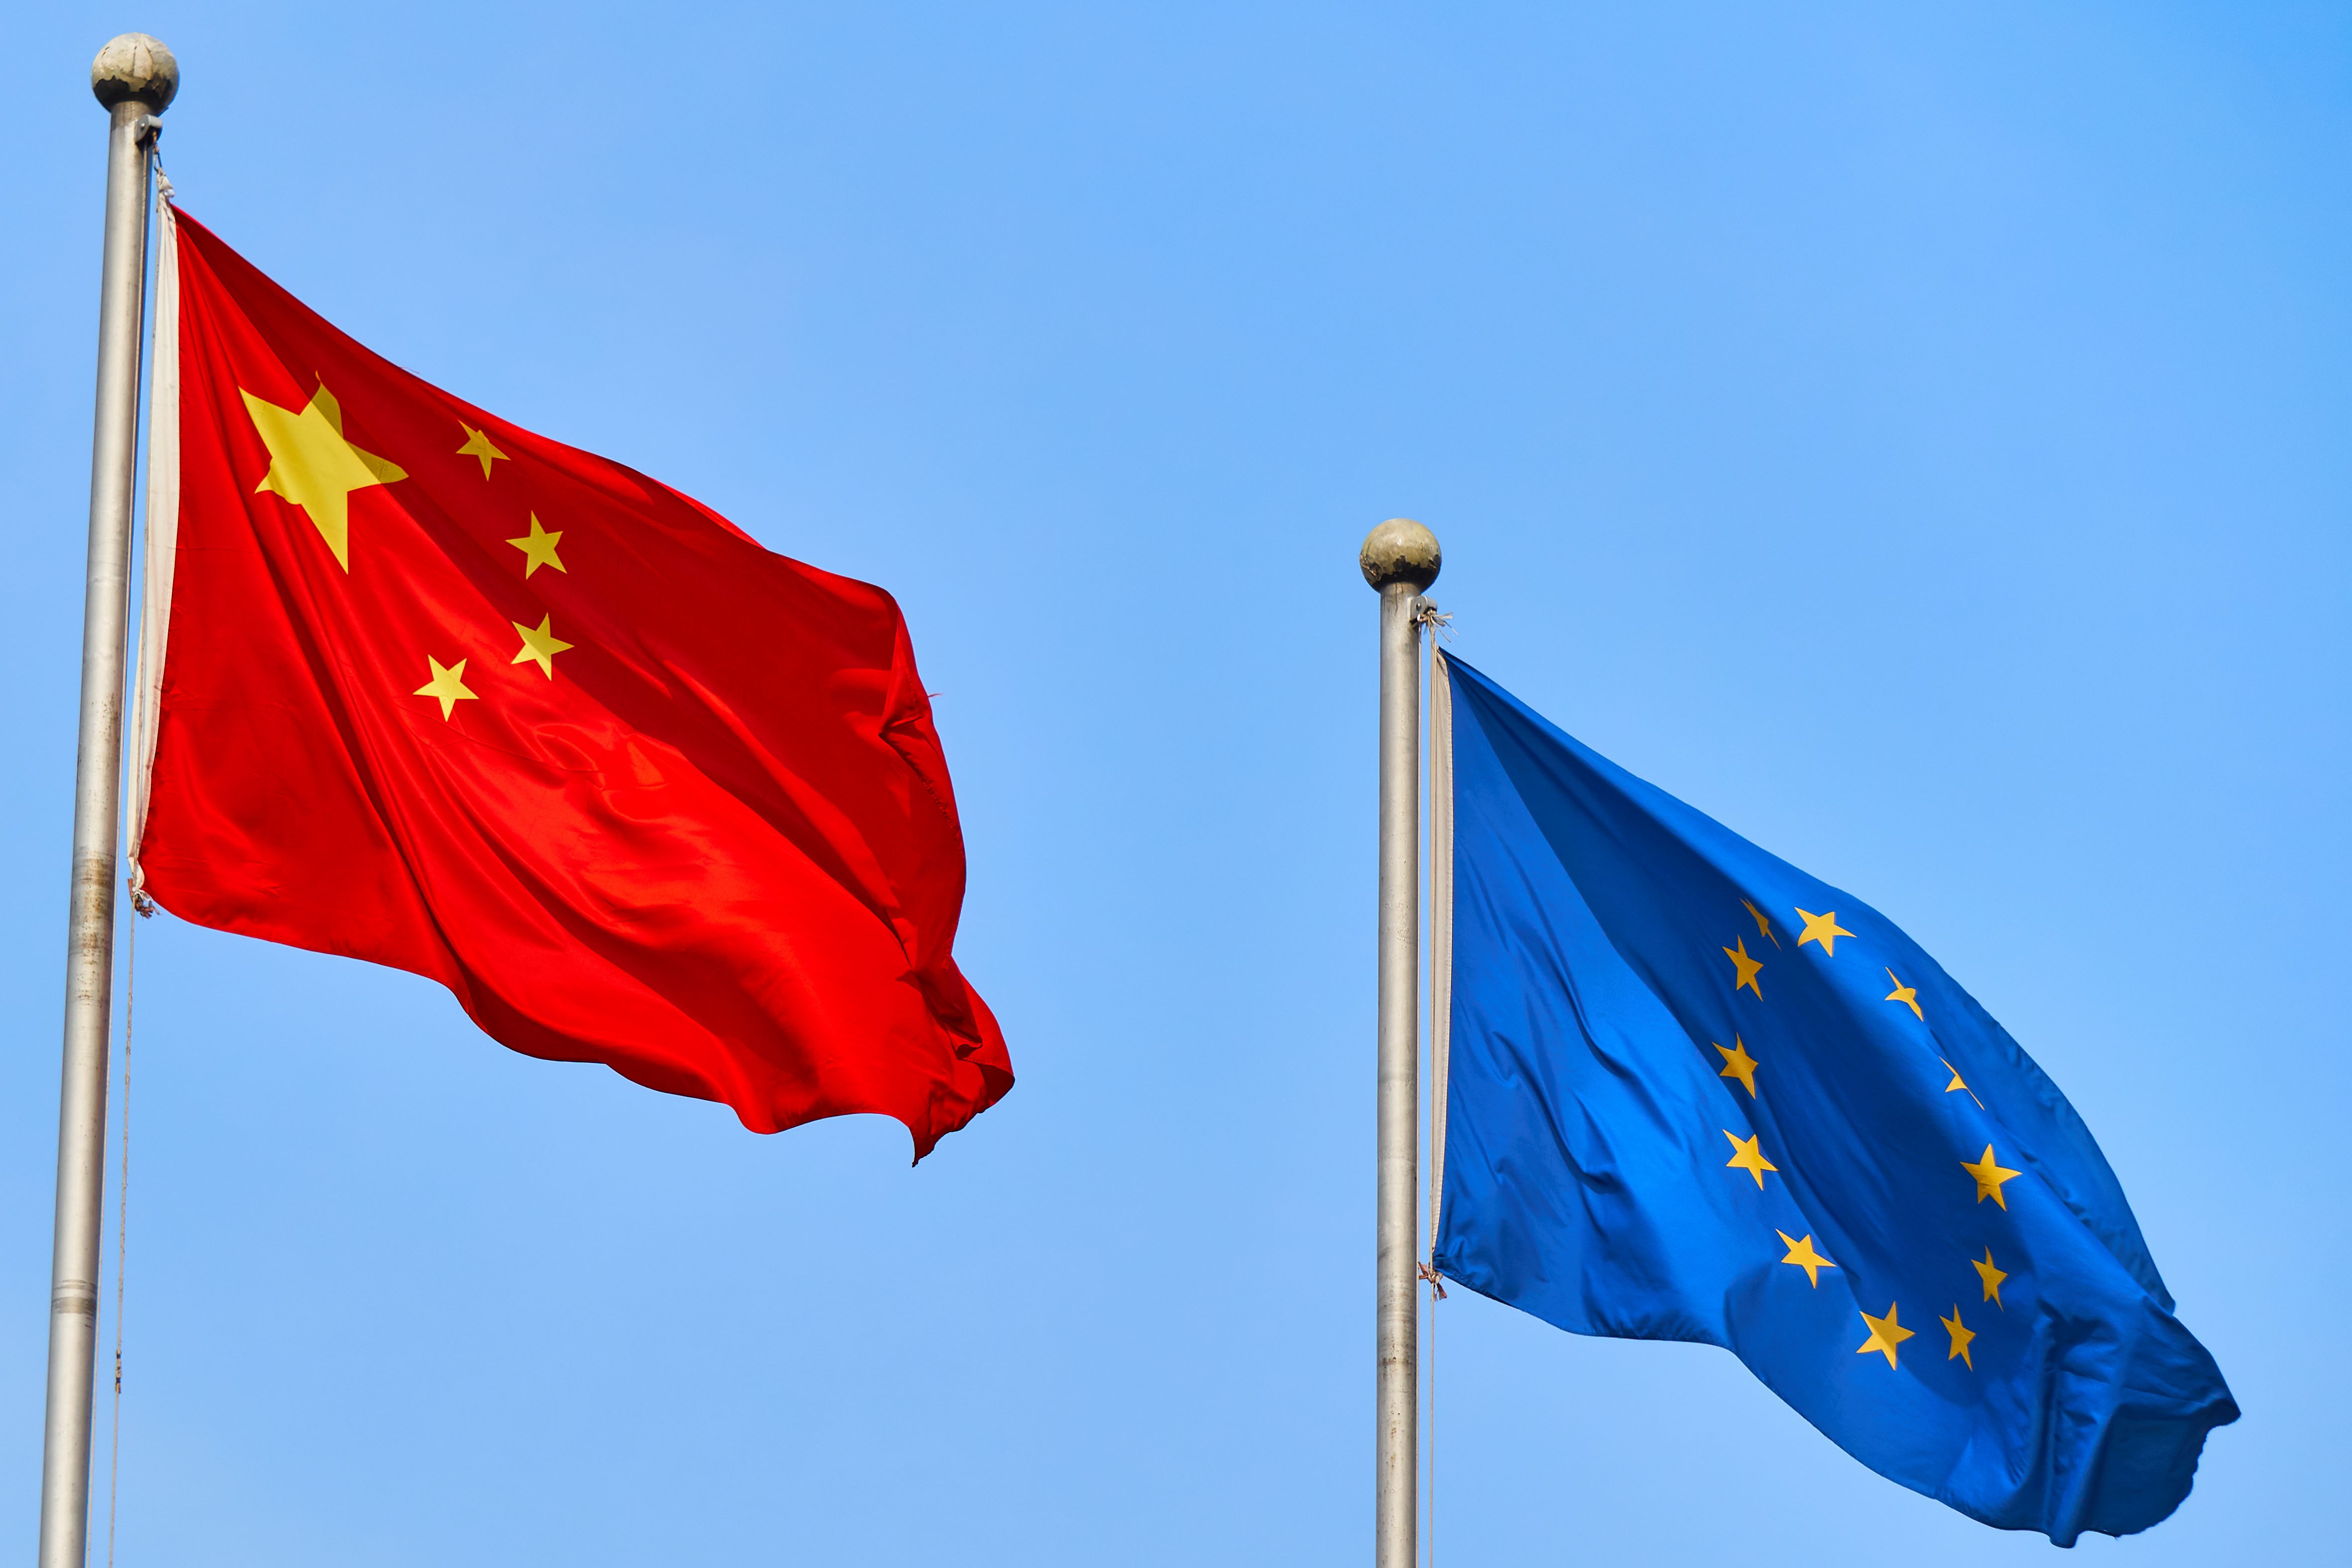 EU-China flags billowing